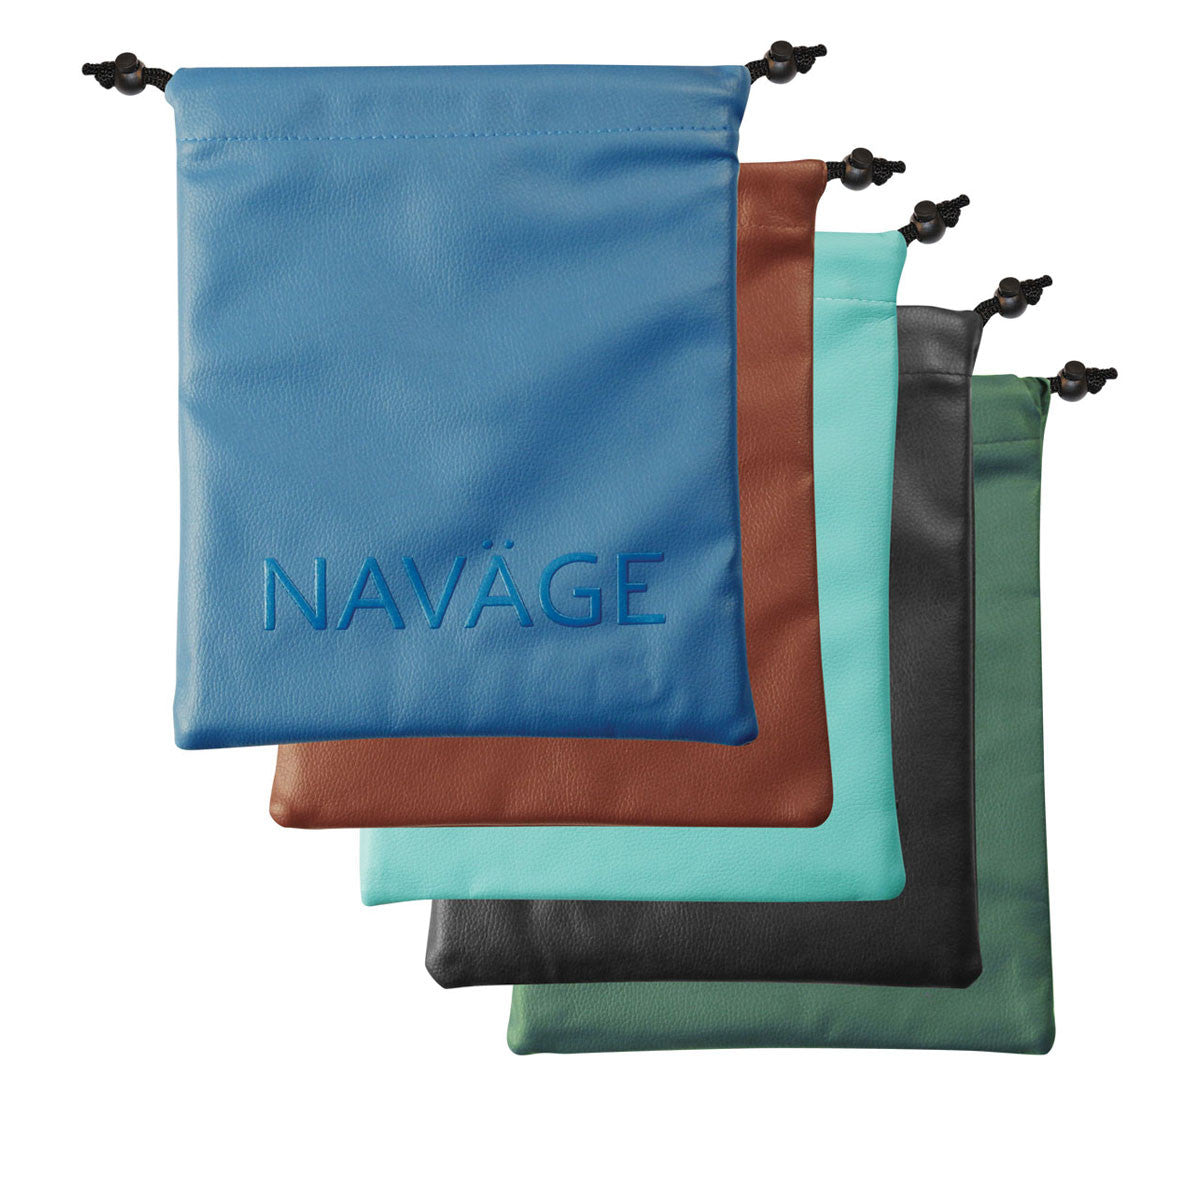 Navage Custom Cleaning Kit Package - Spirit of Health Store